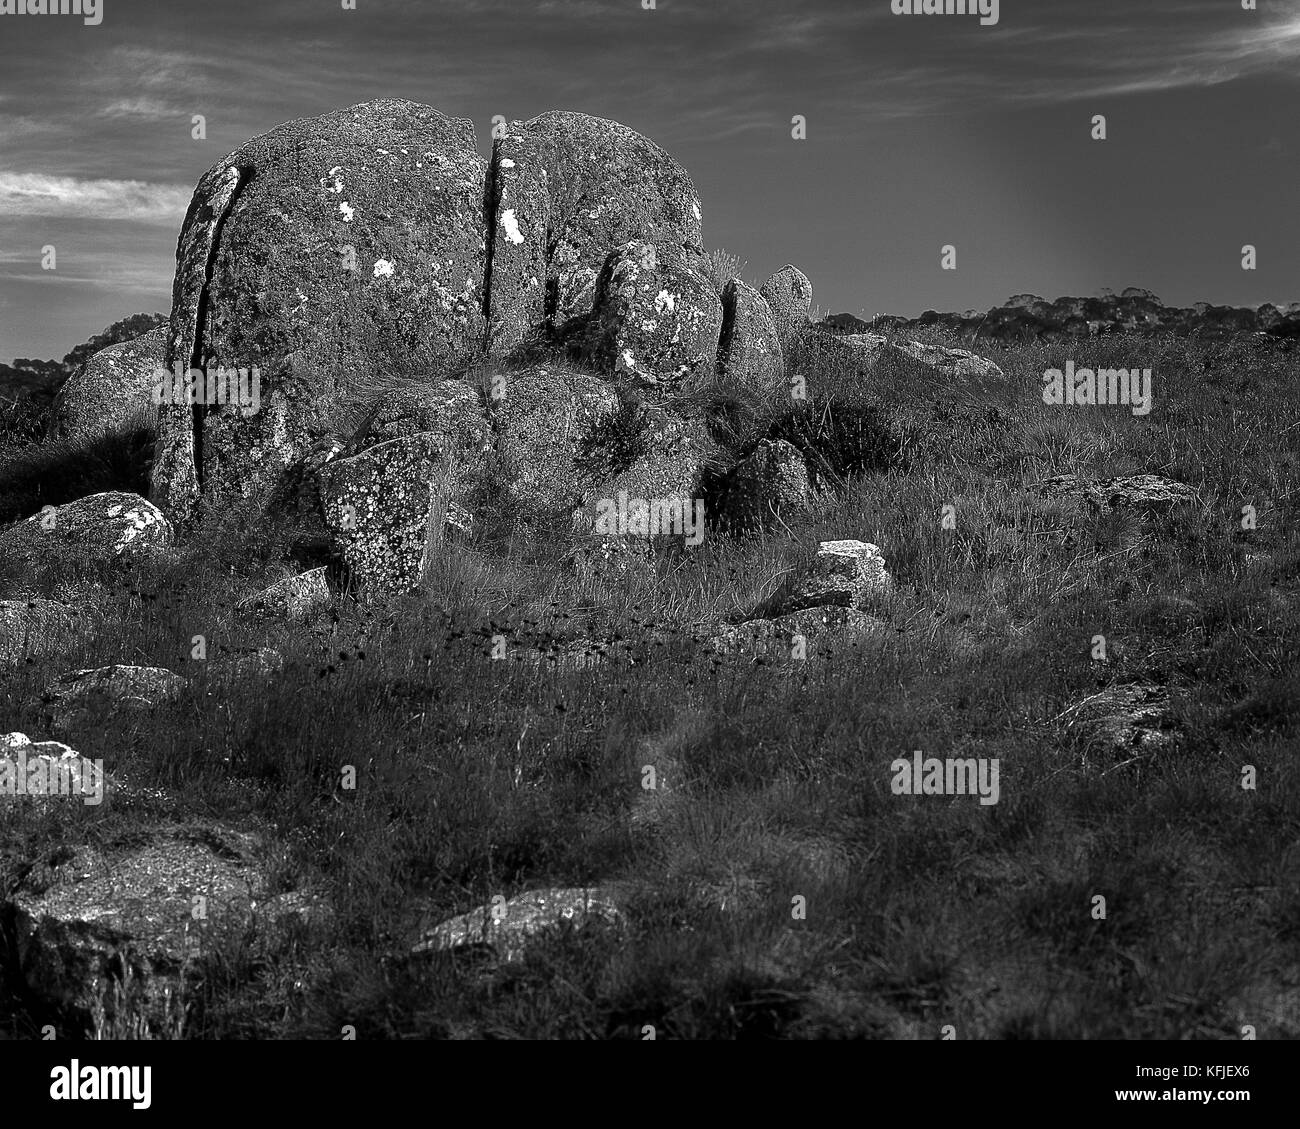 Australia: Granite boulders, Snowy Mountains, NSW Stock Photo